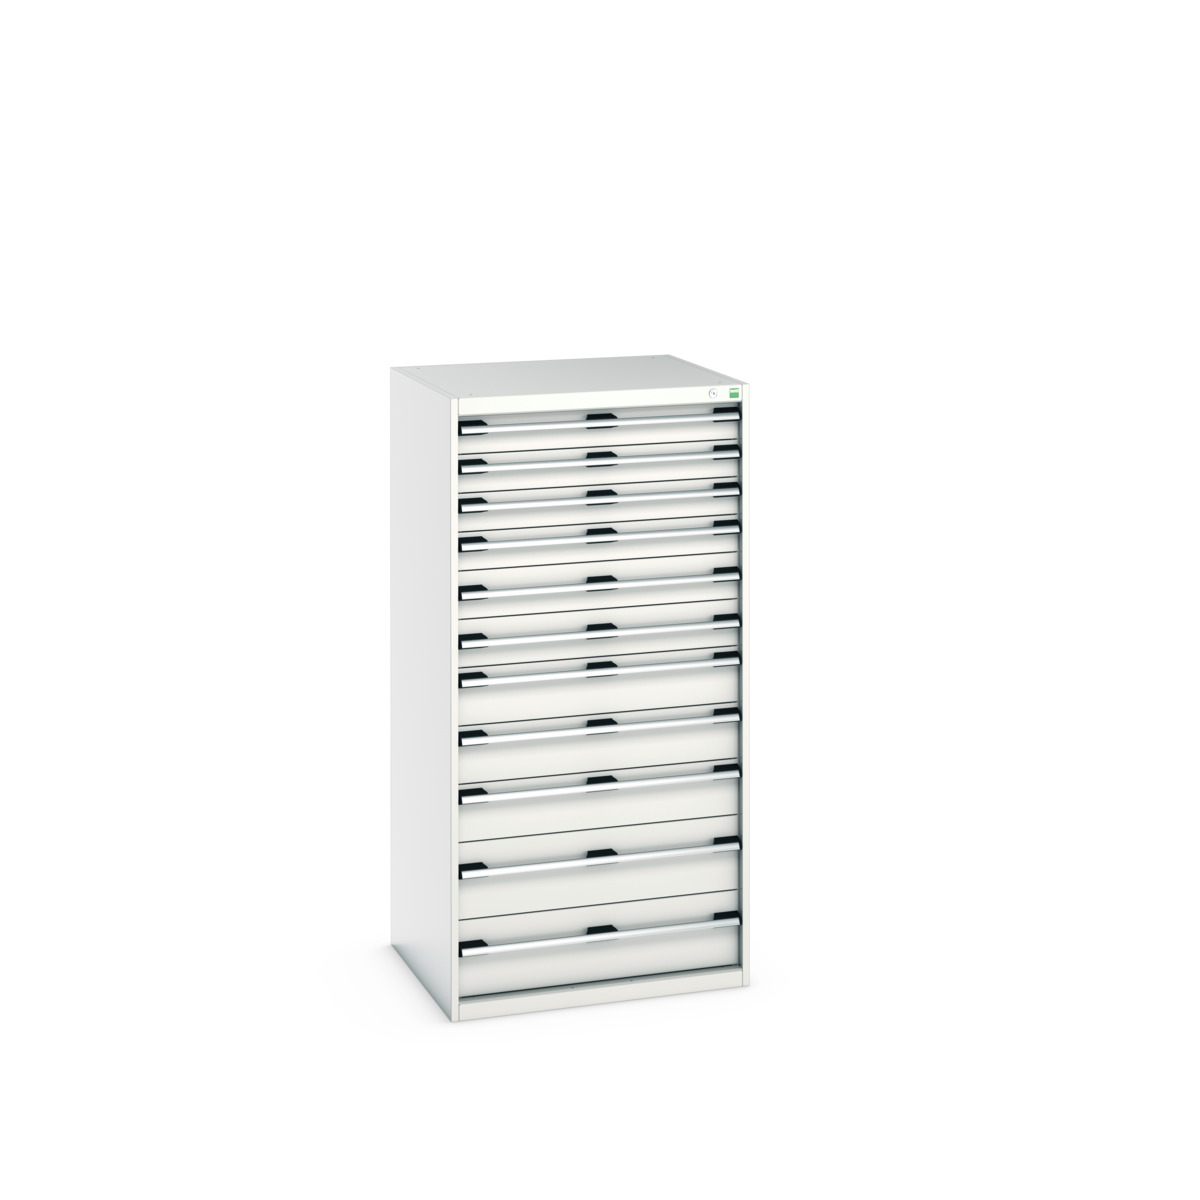 40028041.16V - cubio drawer cabinet